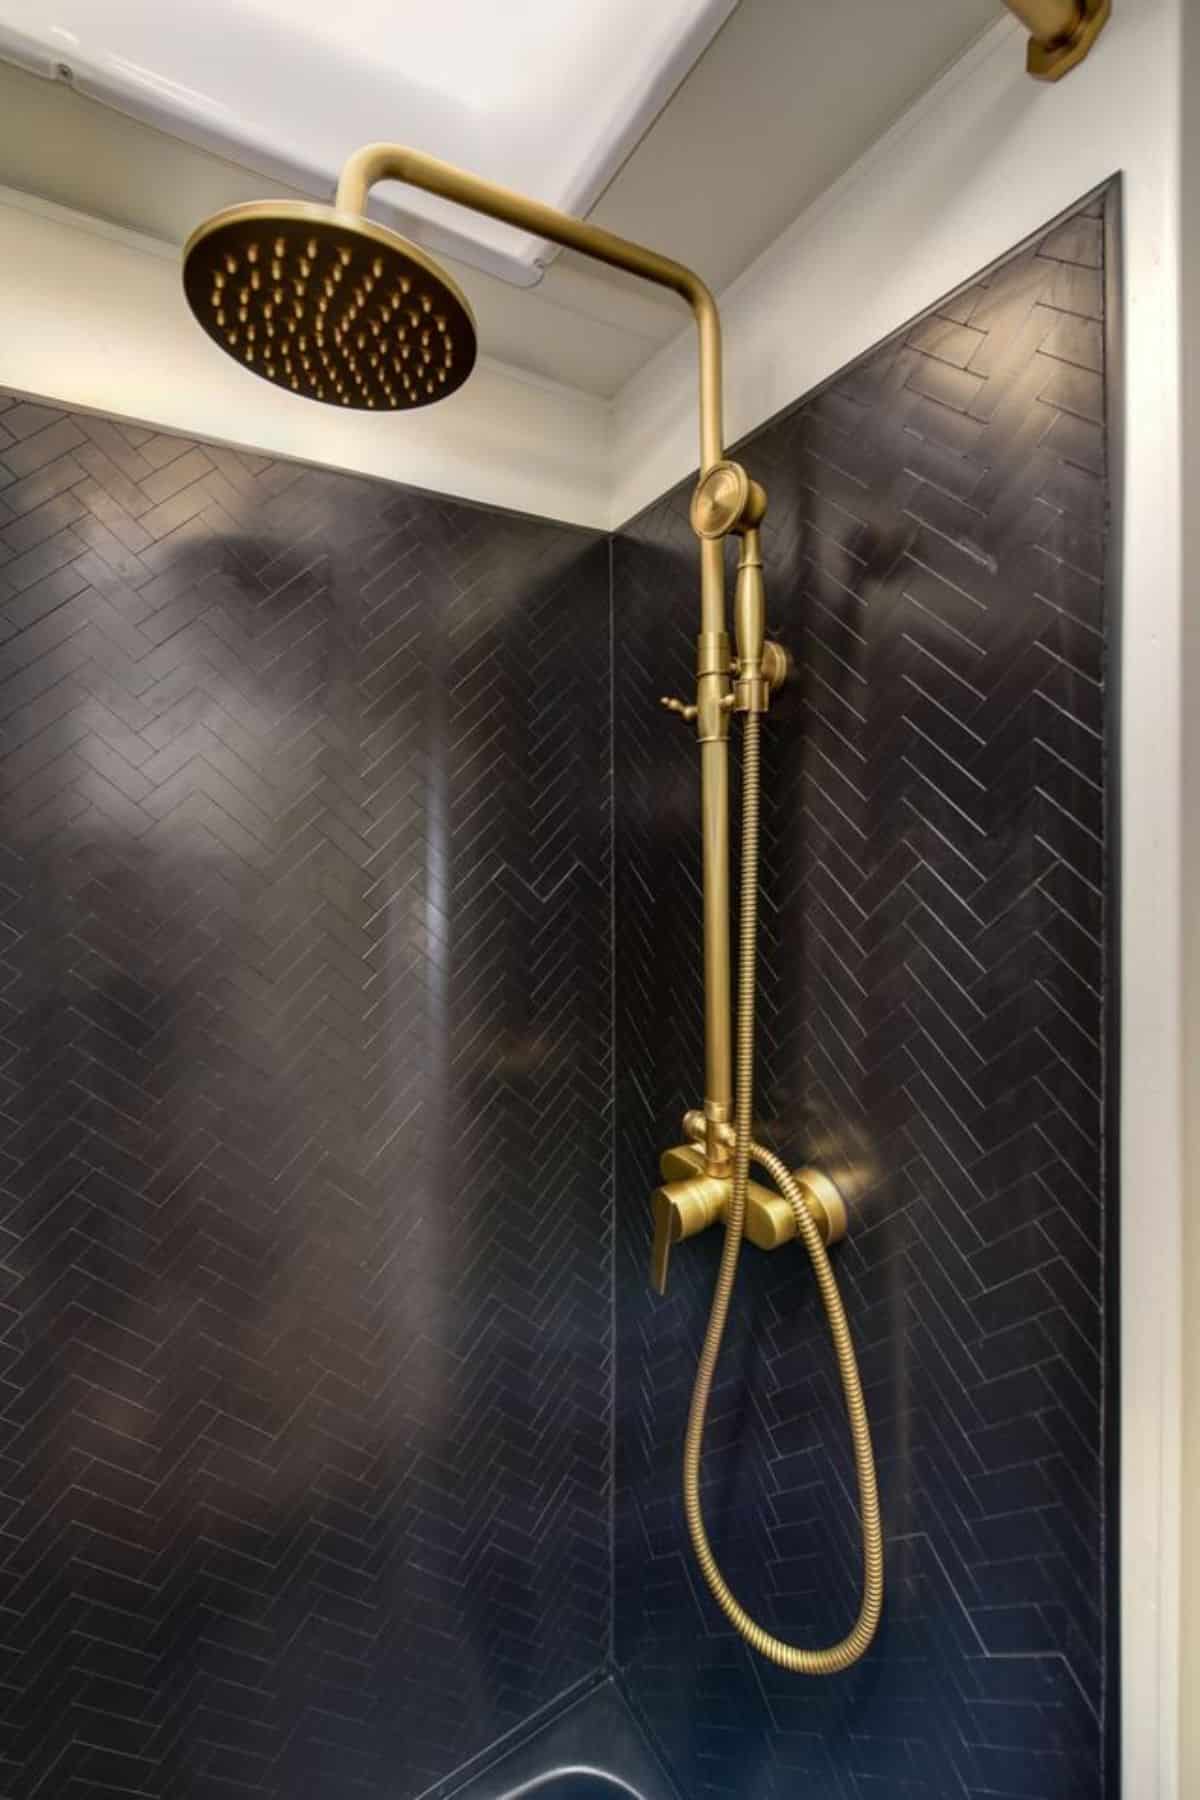 Custom shower tile with rainfall shower fittings